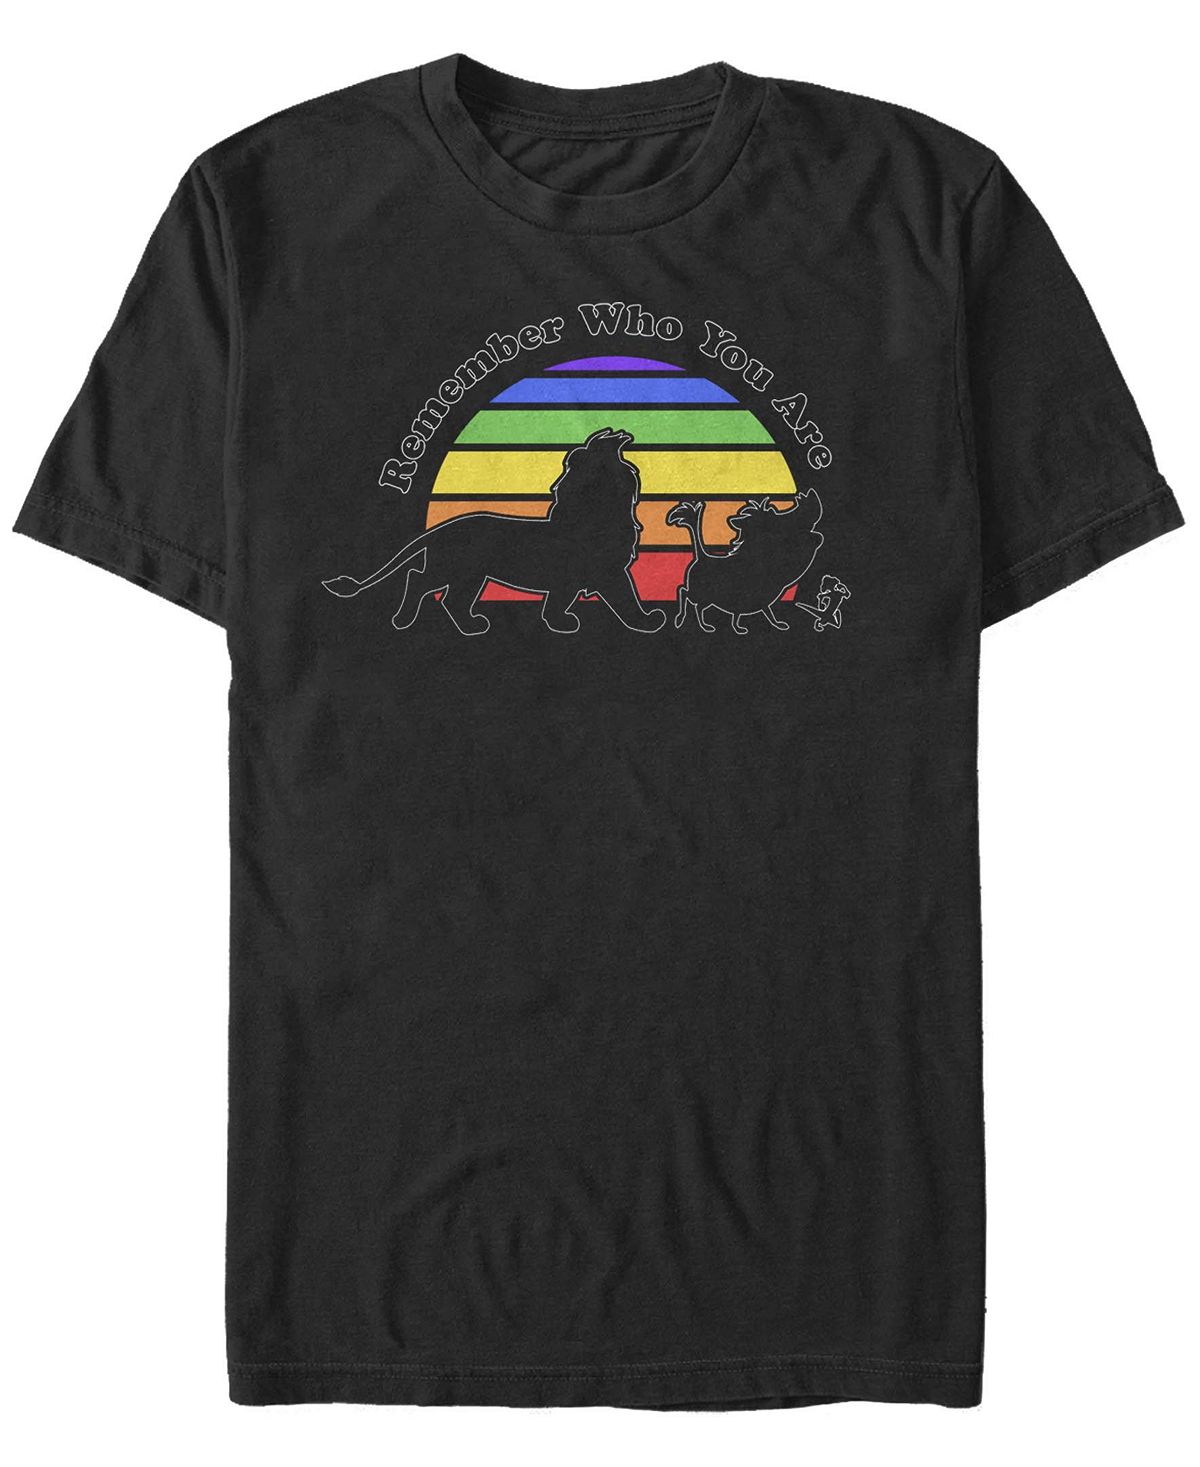 Мужская футболка с круглым вырезом с короткими рукавами remember rainbow Fifth Sun, черный hakuna matata